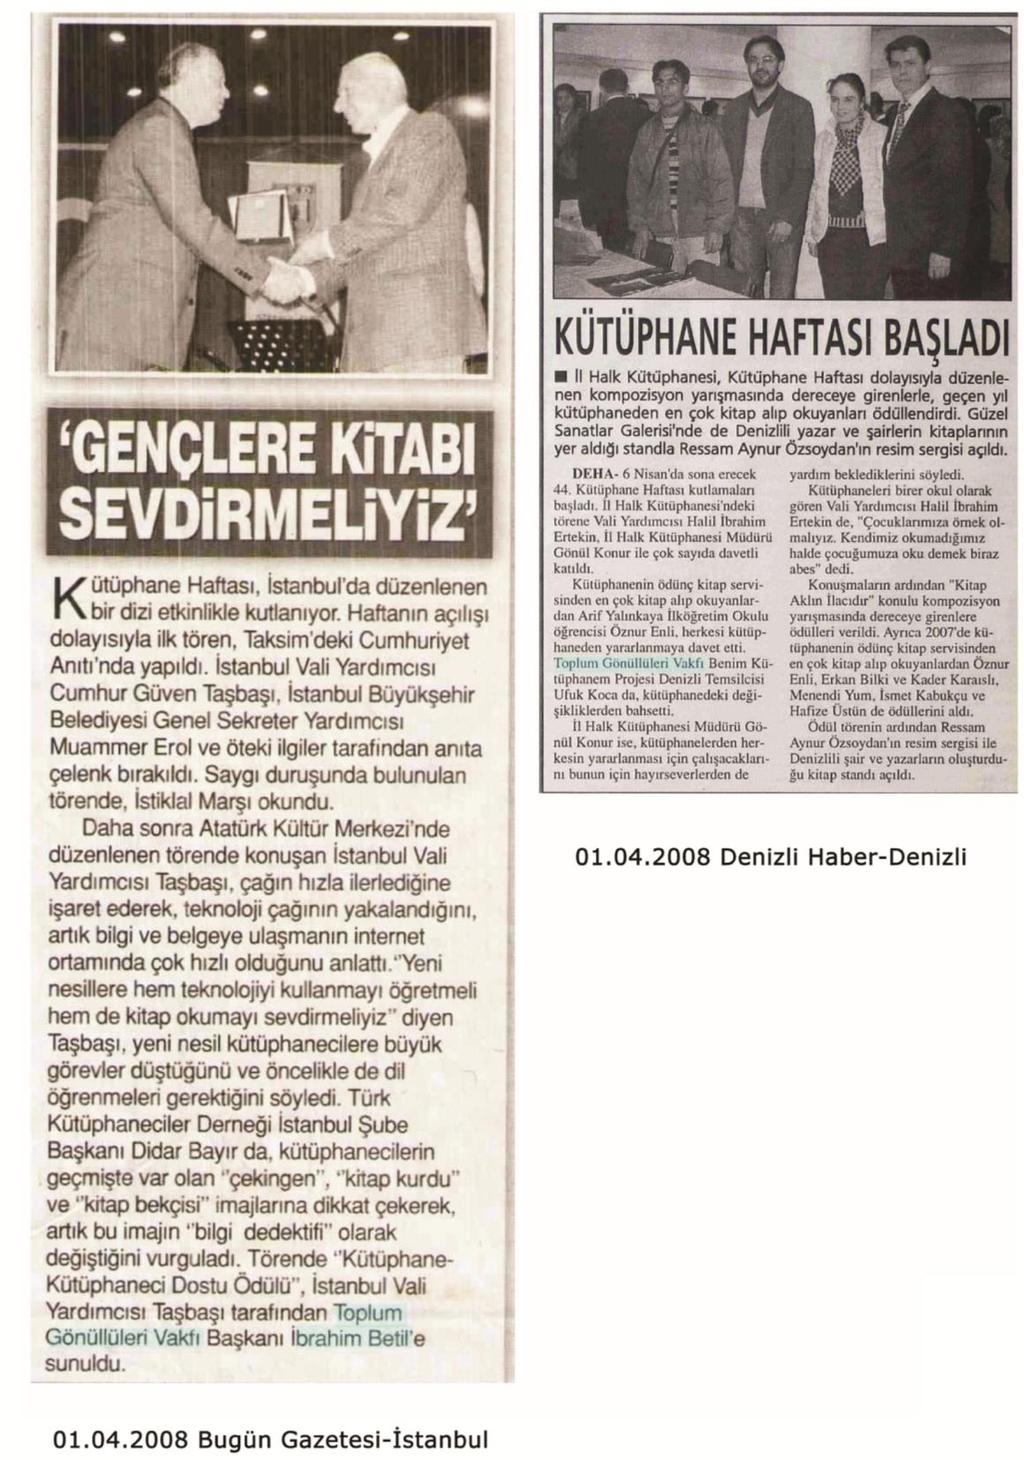 EK 7. Bugün Gazetesi (01.04.